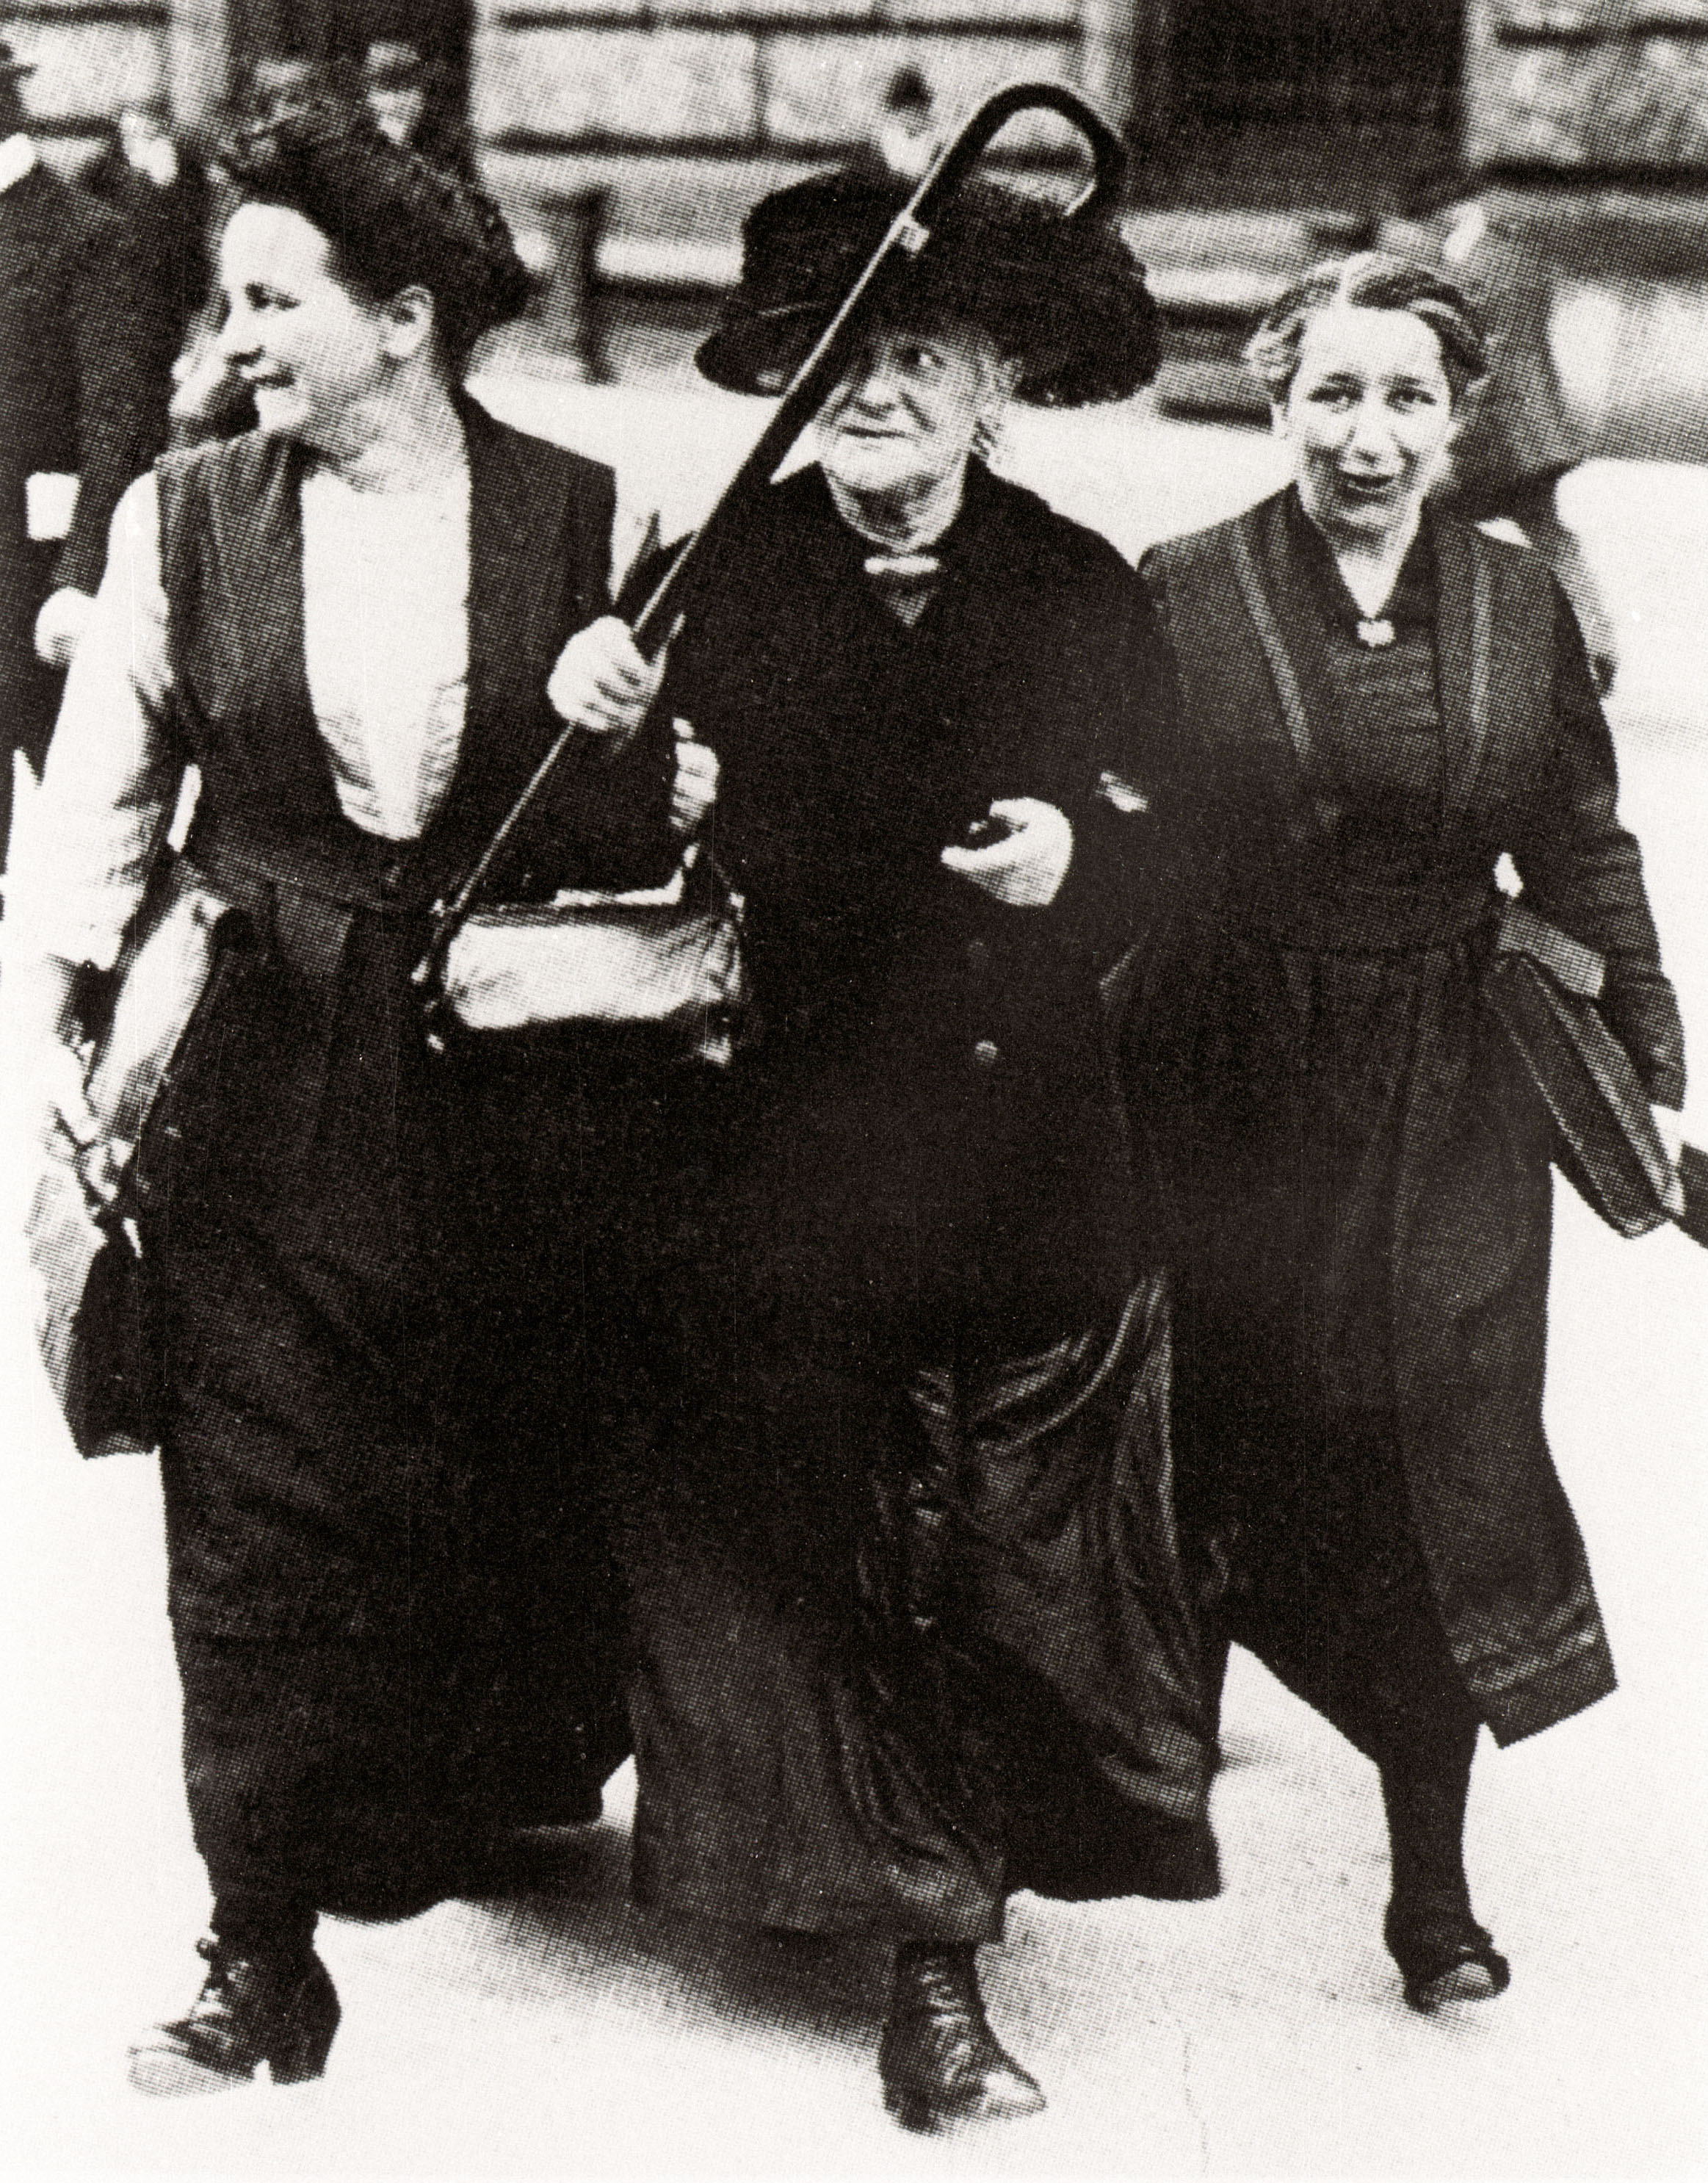 Porträt von F(Lore Agnes (links) zusammen mit Clara Zetkin (Mitte) und Mathilde Wurm (rechts) vor dem Reichstag in Berlin, 1919)rau Lore Agnes, gehörte 1919 unter anderem zu den ersten Frauen im deutschen Reichstag, schwarz-weiß Aufnahme